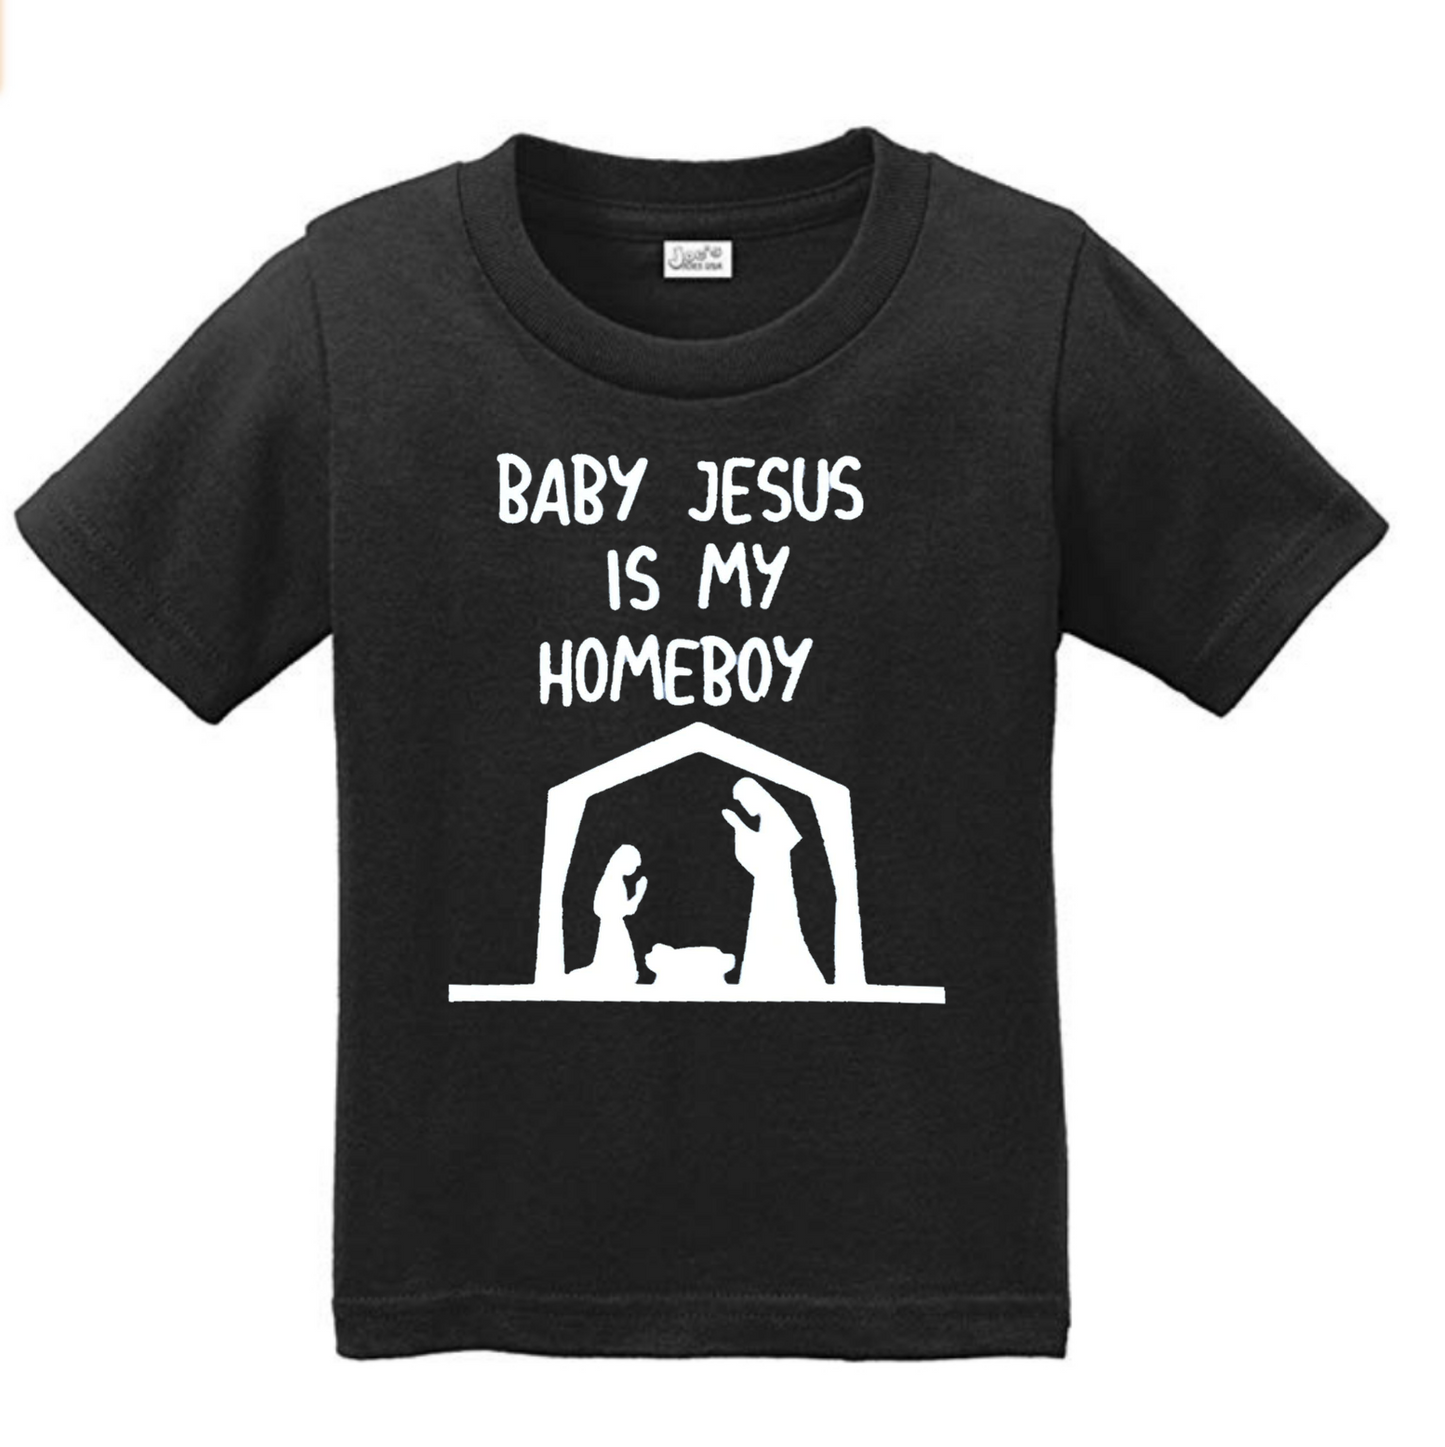 Baby Jesus is my homeboy Tee